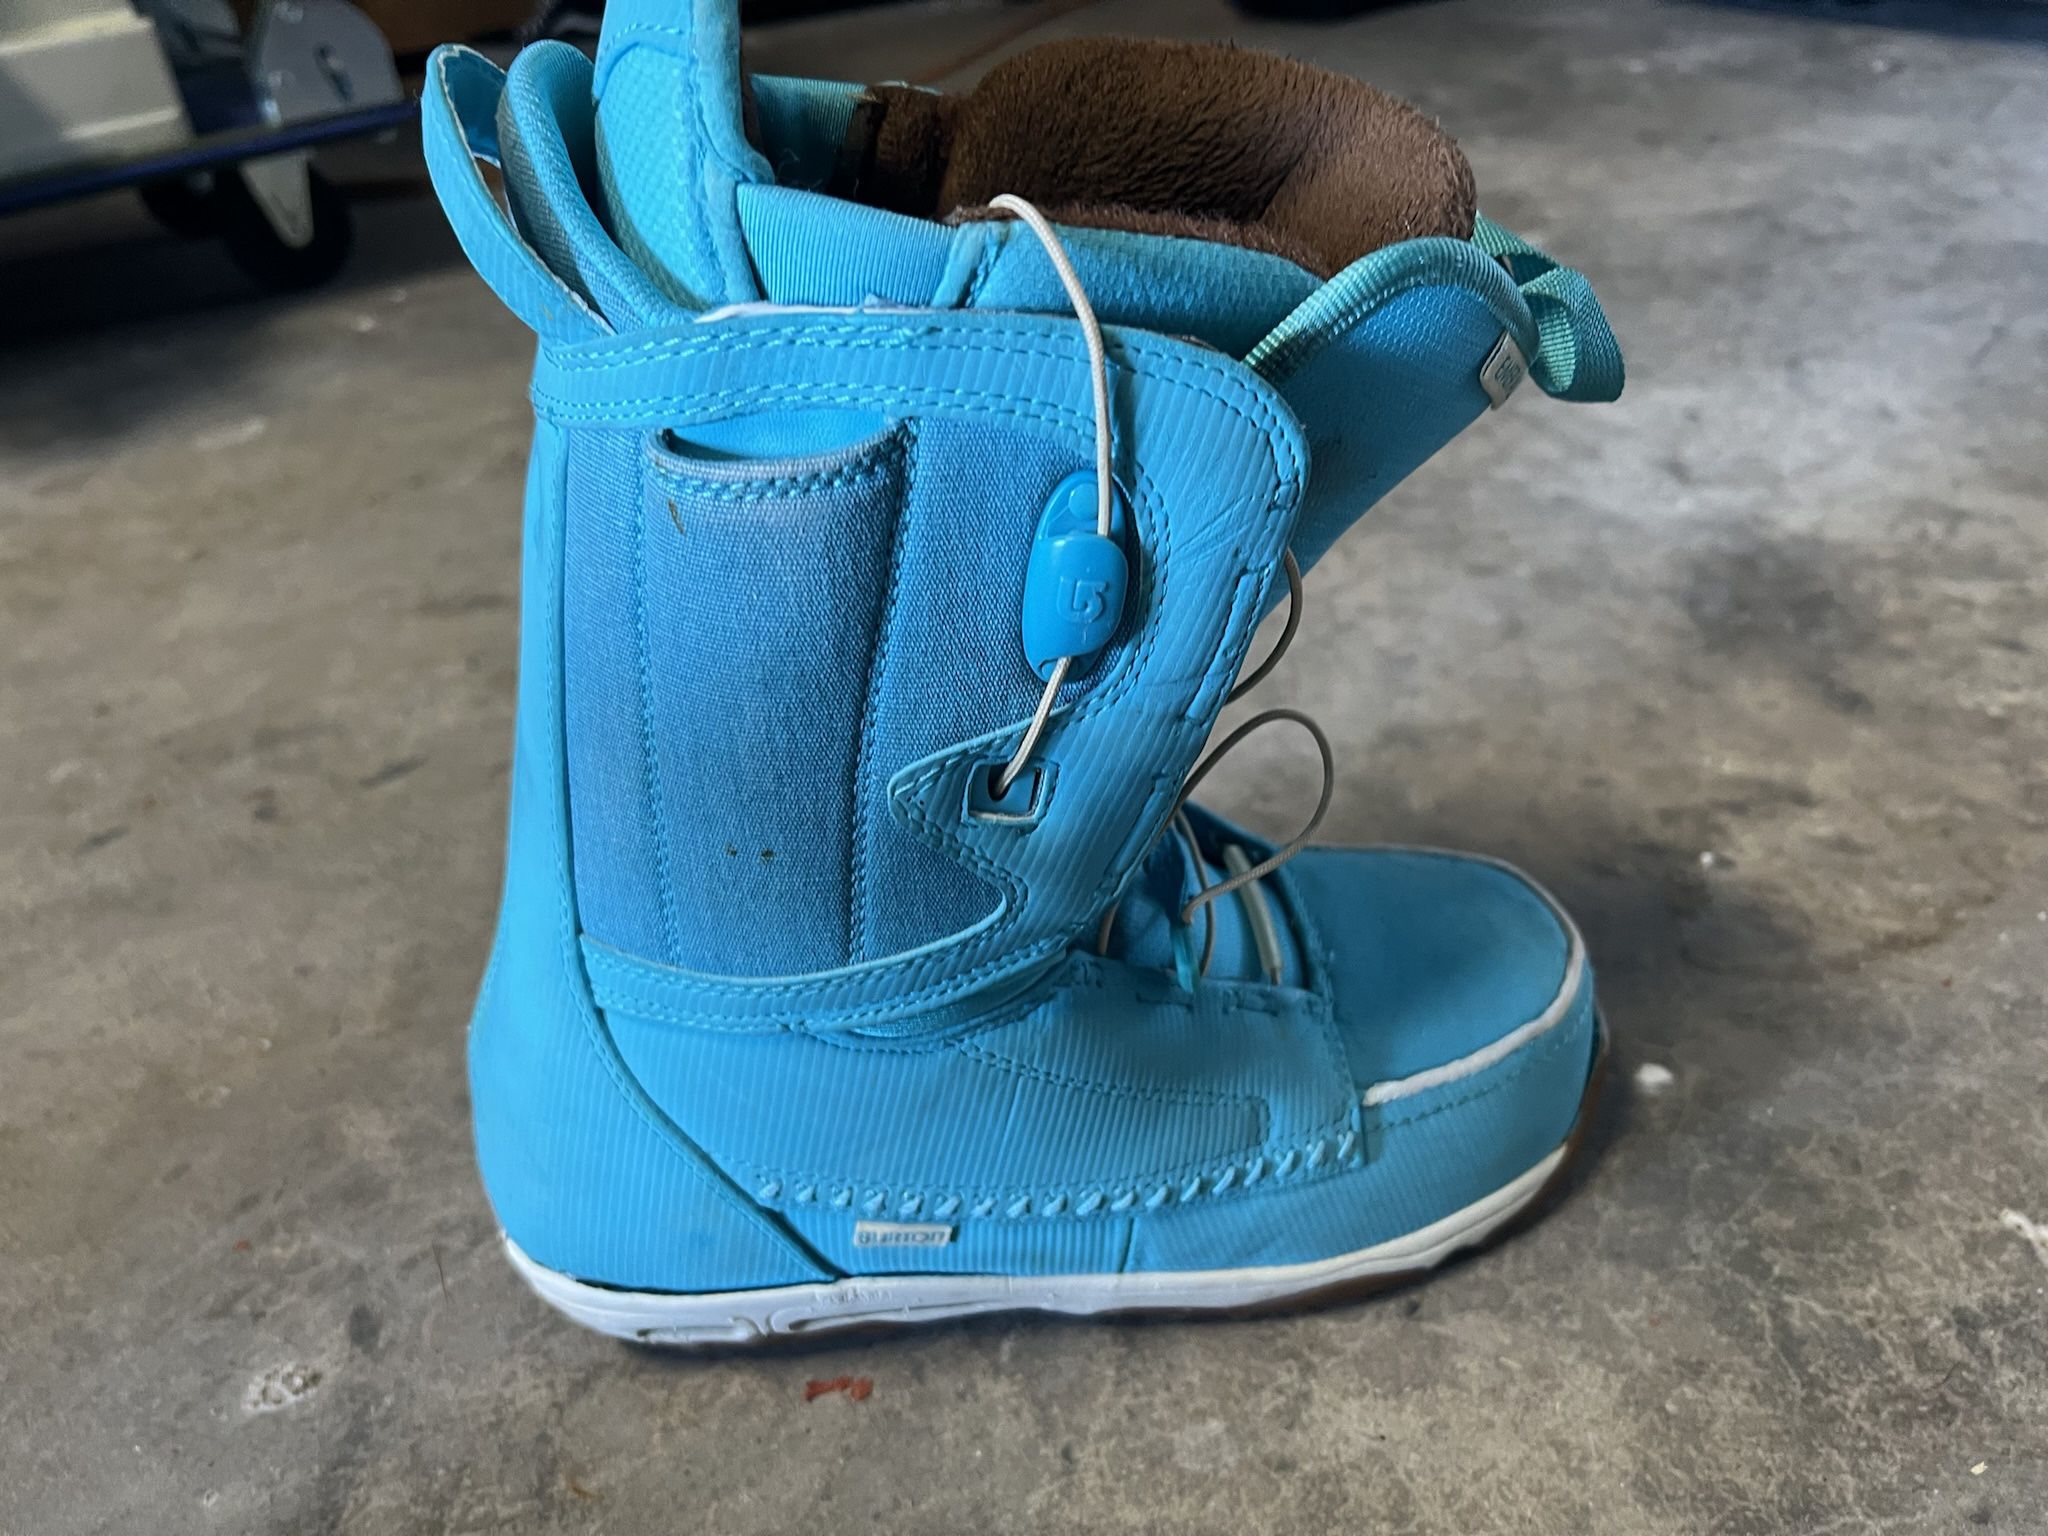 Snowboard Burton boots 